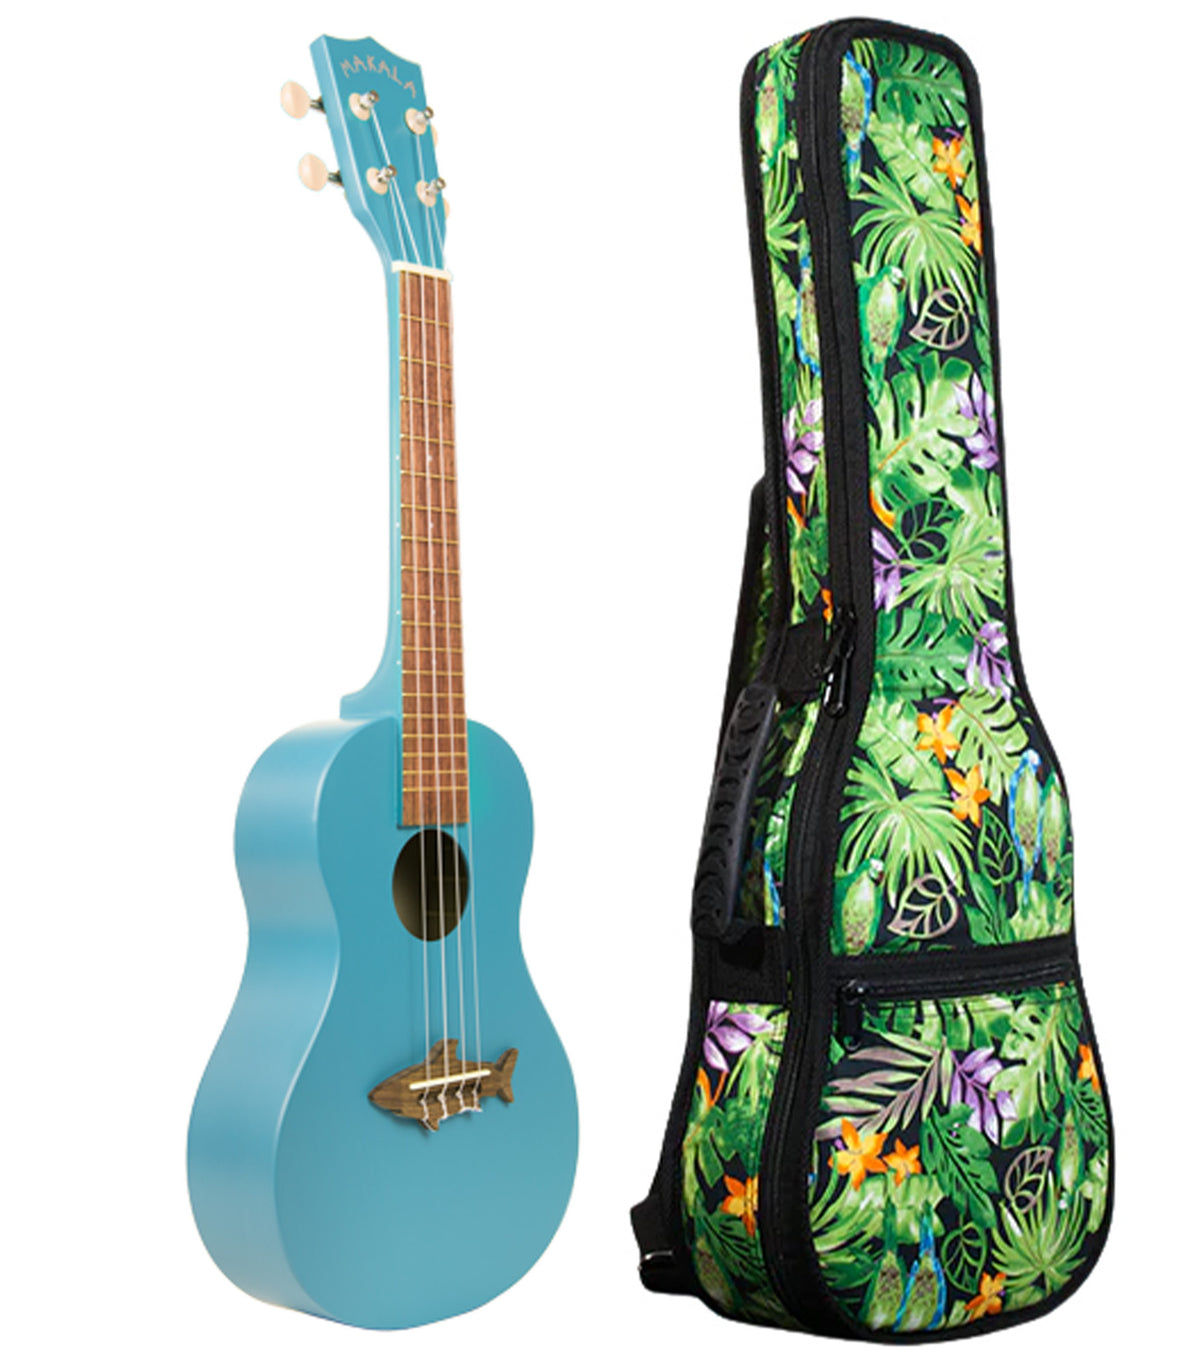 MK-CS/BLU Blue Concert Shark Ukelele Includes Gigbag Floral Print, Padded with Backpack straps.